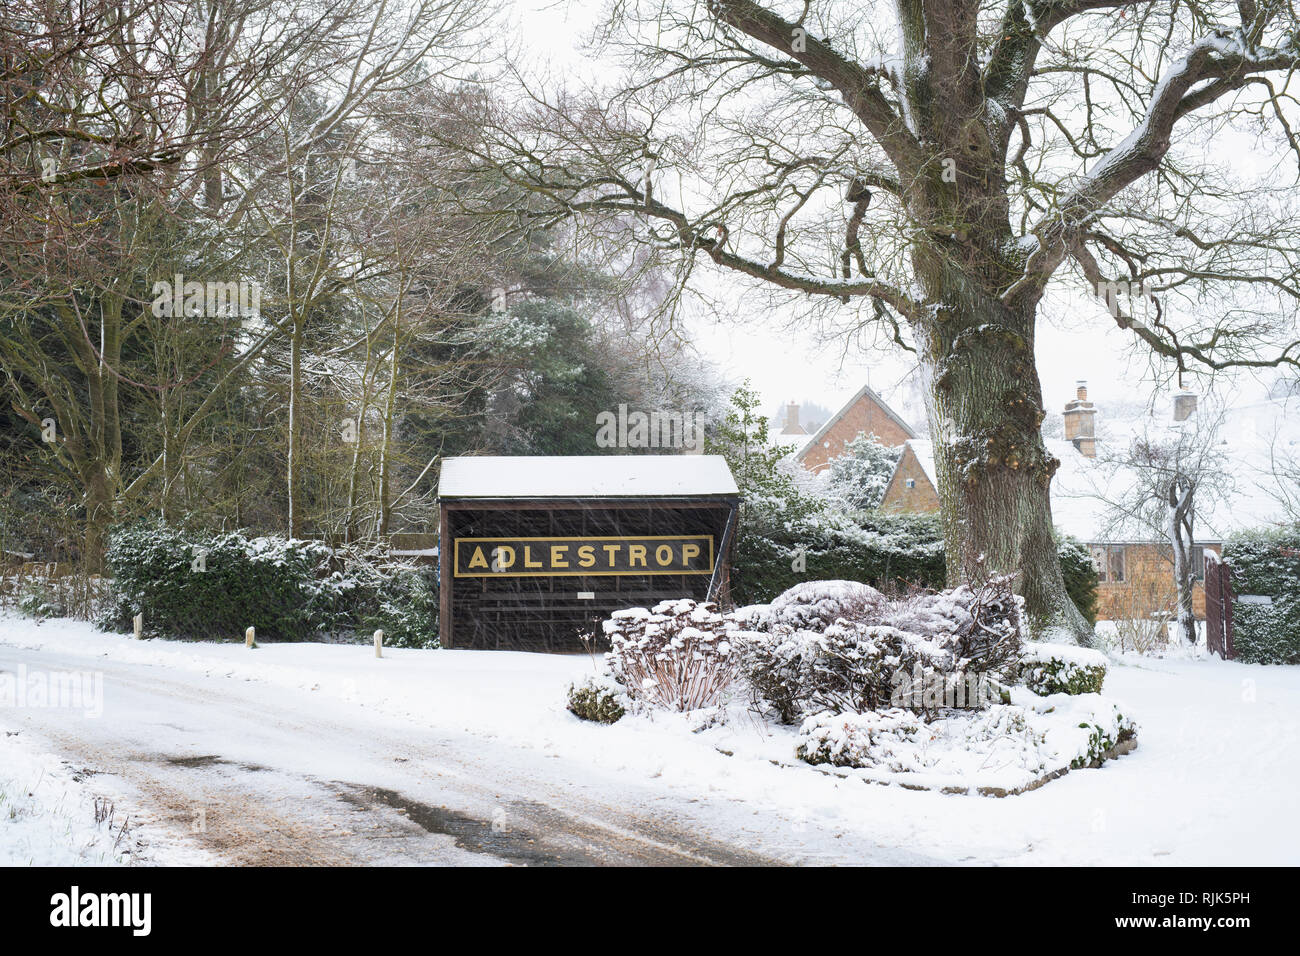 Adlestrop Ortsschild und Bushaltestelle im Winter Schnee. Adlestrop, Cotswolds, Gloucestershire, England Stockfoto